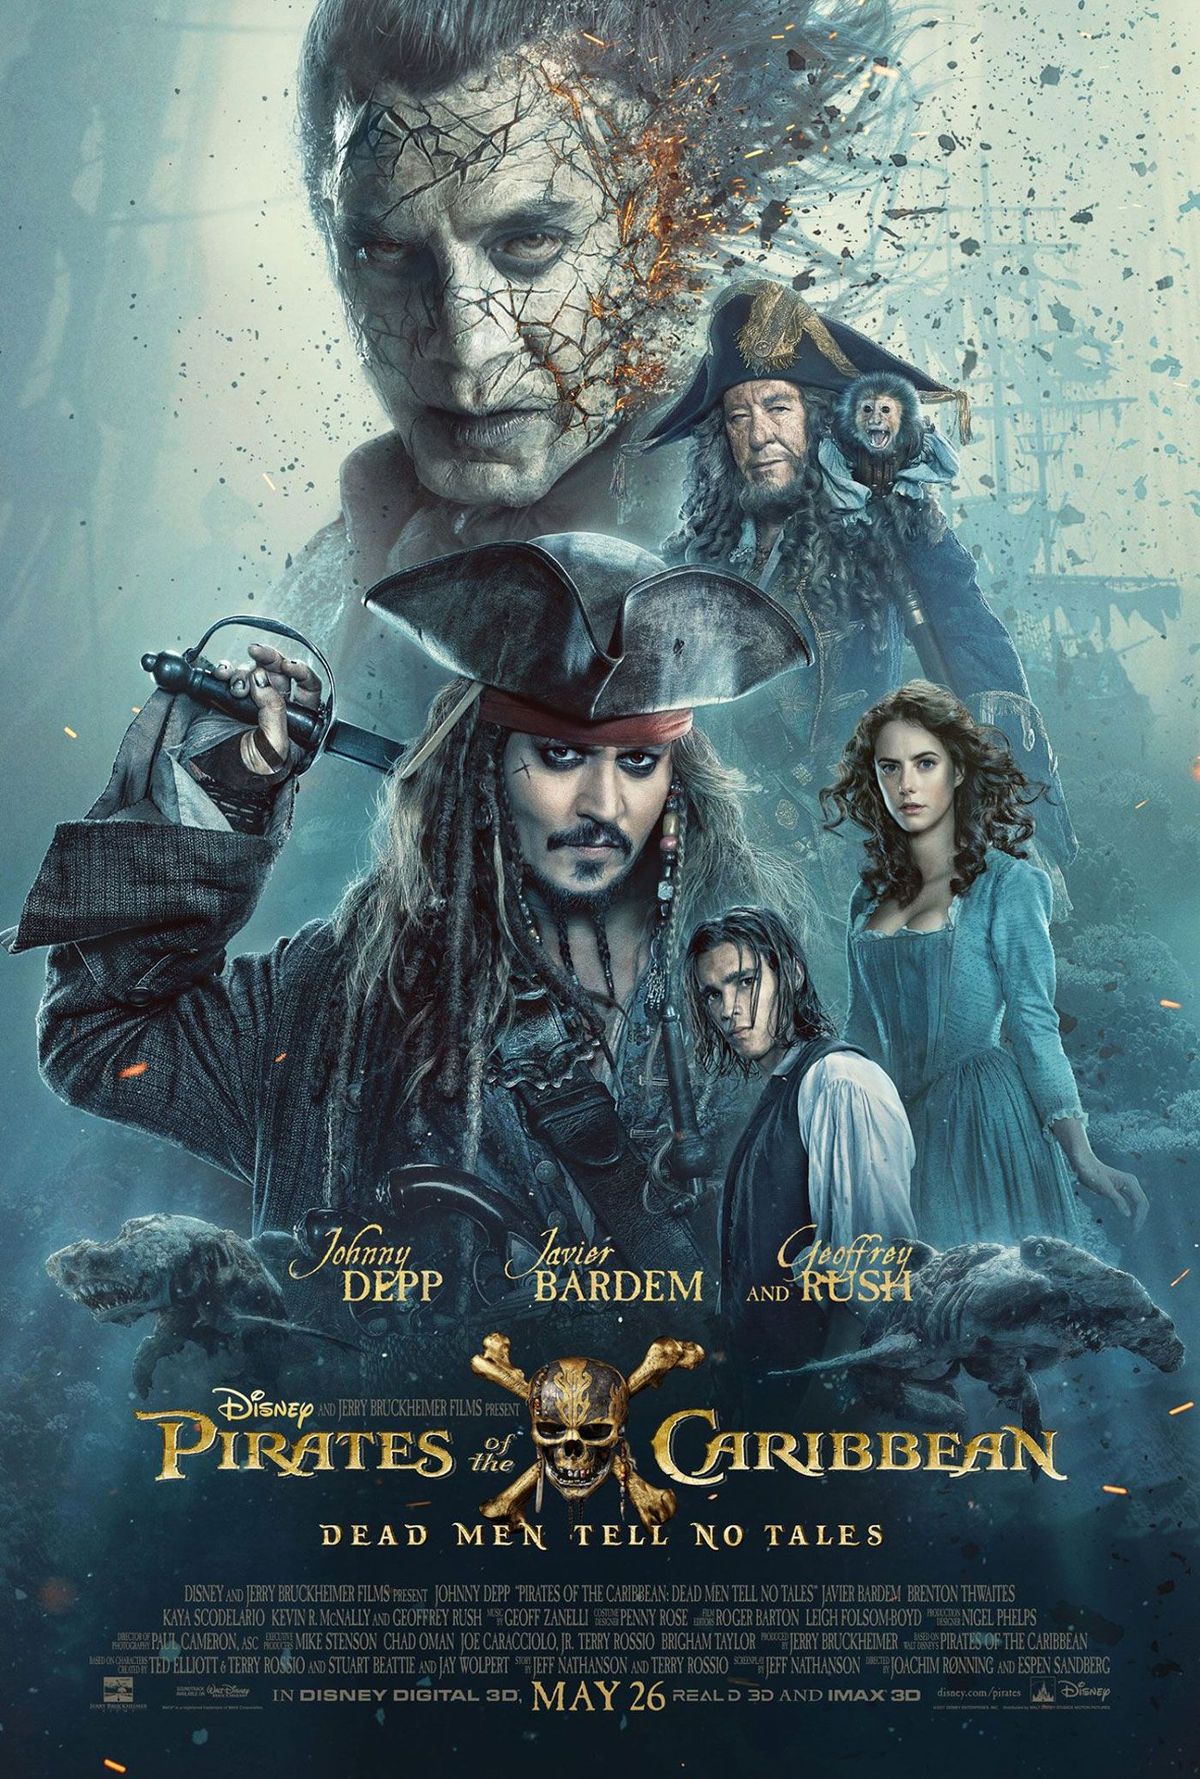 VZHLED: Plakát Pirátů z Karibiku sestavuje námořnickou posádku Jacka Sparrowa